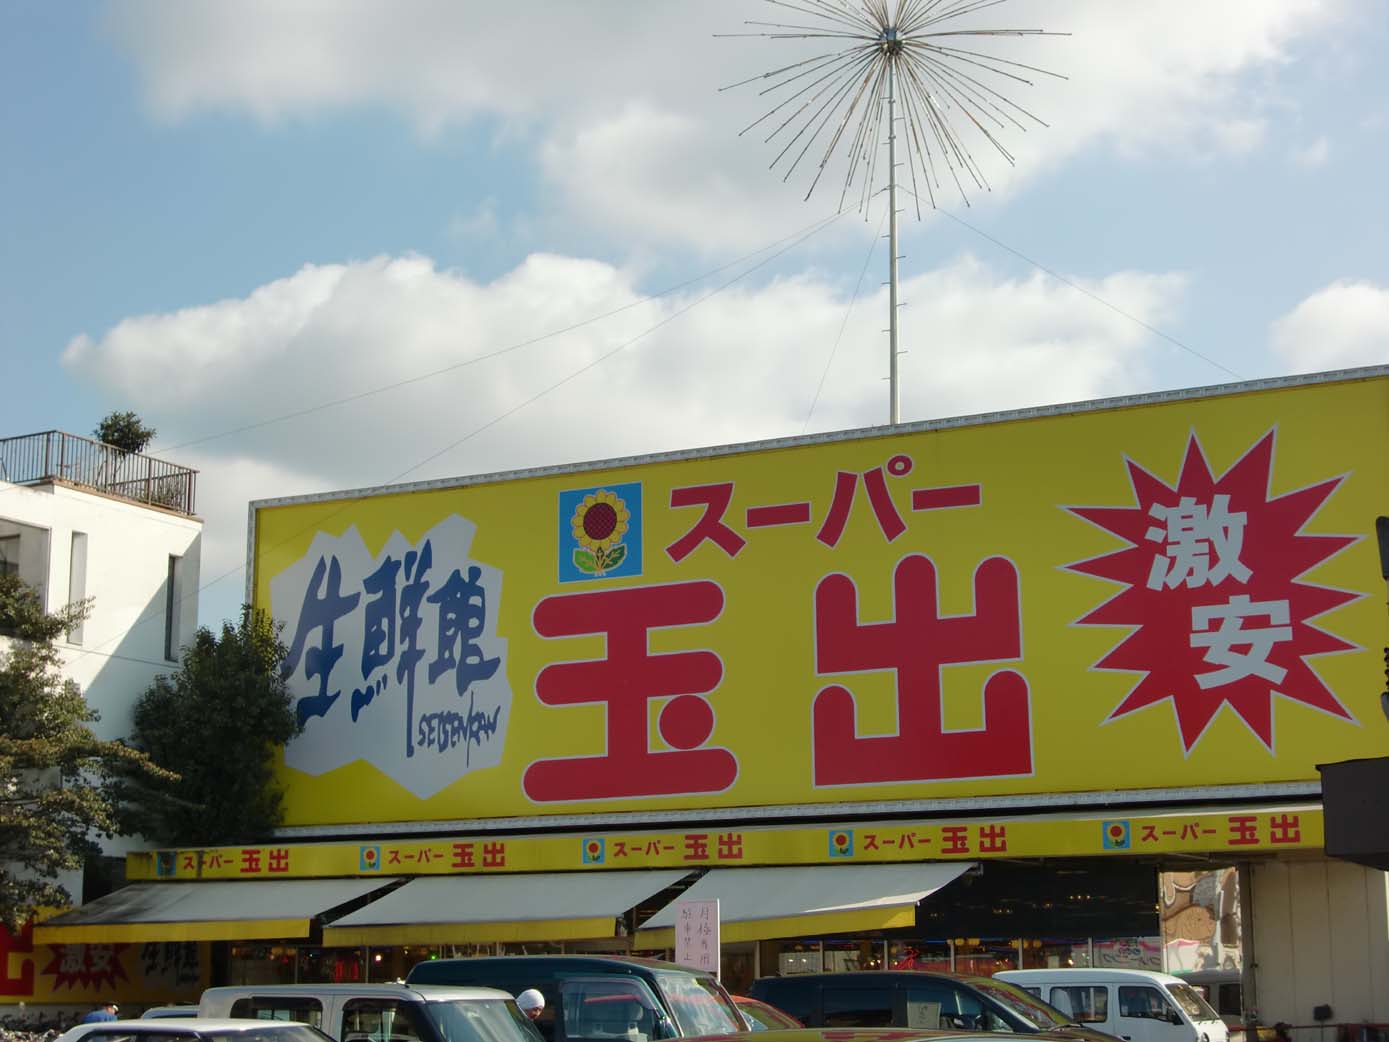 Supermarket. 568m to Super Tamade Amami store (Super)